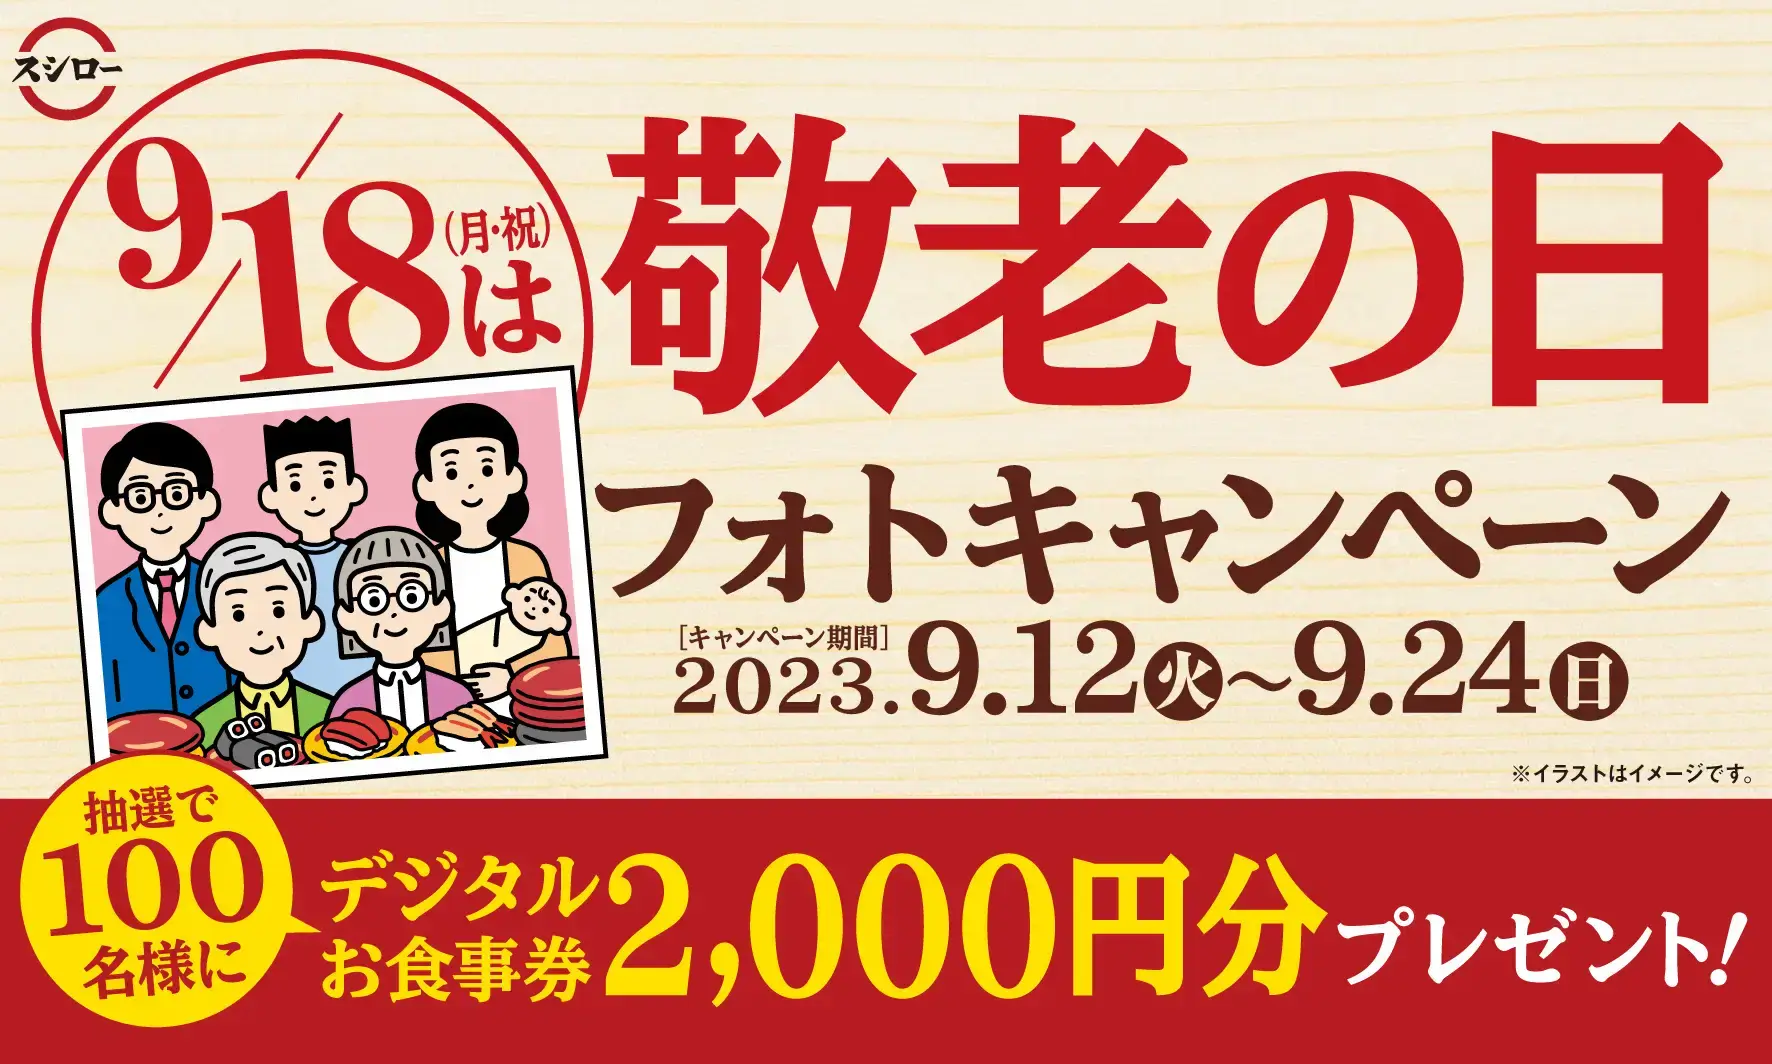 スシロー 敬老の日フォトキャンペーンが開催中！2023年9月24日（日）までデジタルお食事券2,000円分当たる